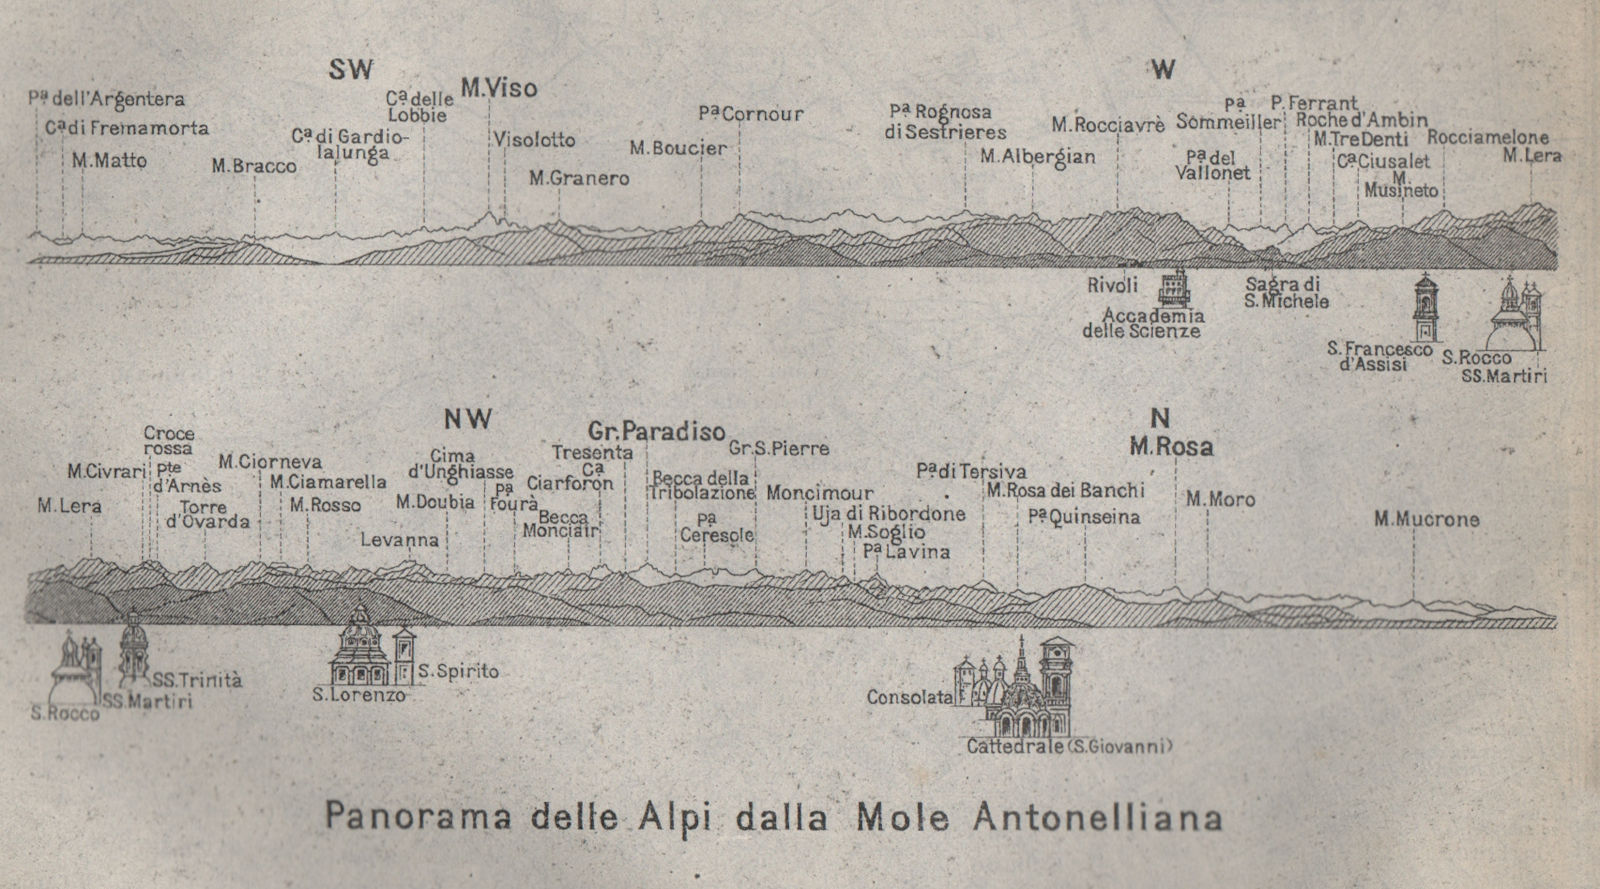 Panorama delle Alpi dalla Mole Antonelliana. The Alps from Torino/Turin 1913 map